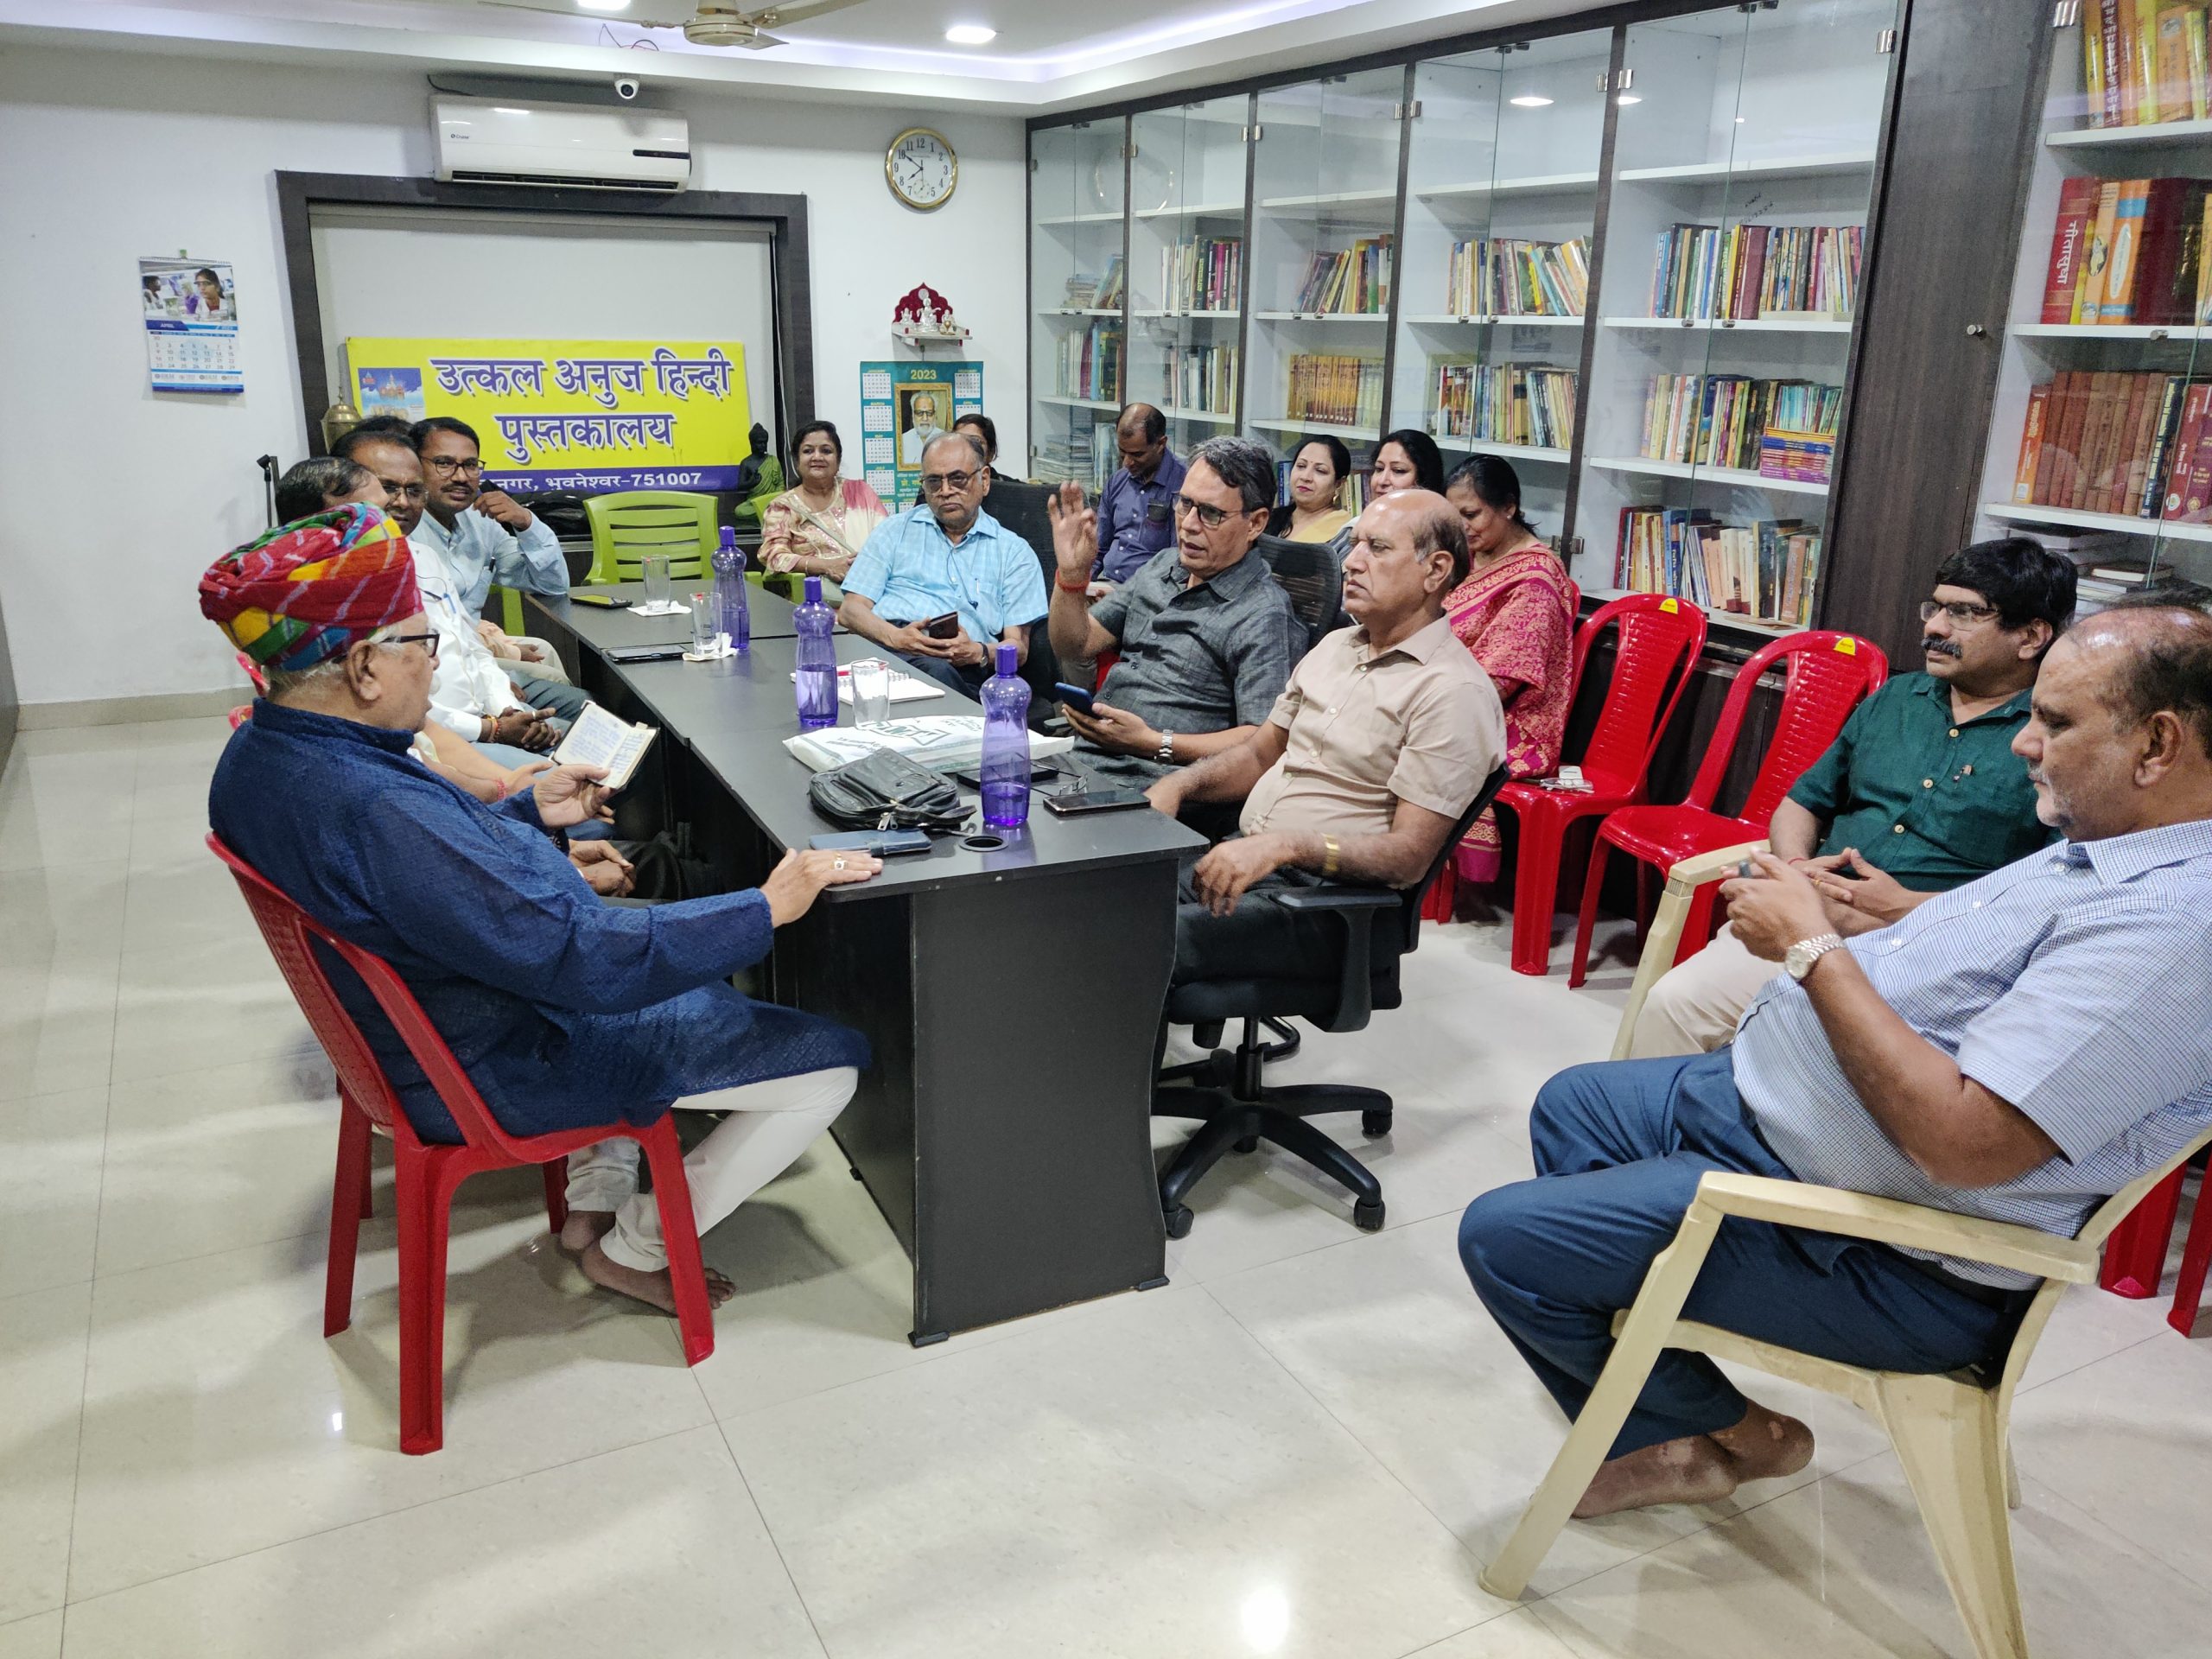 उत्कल अनुज हिंदी वाचनालय में स्वरचित कविता पाठ आयोजित